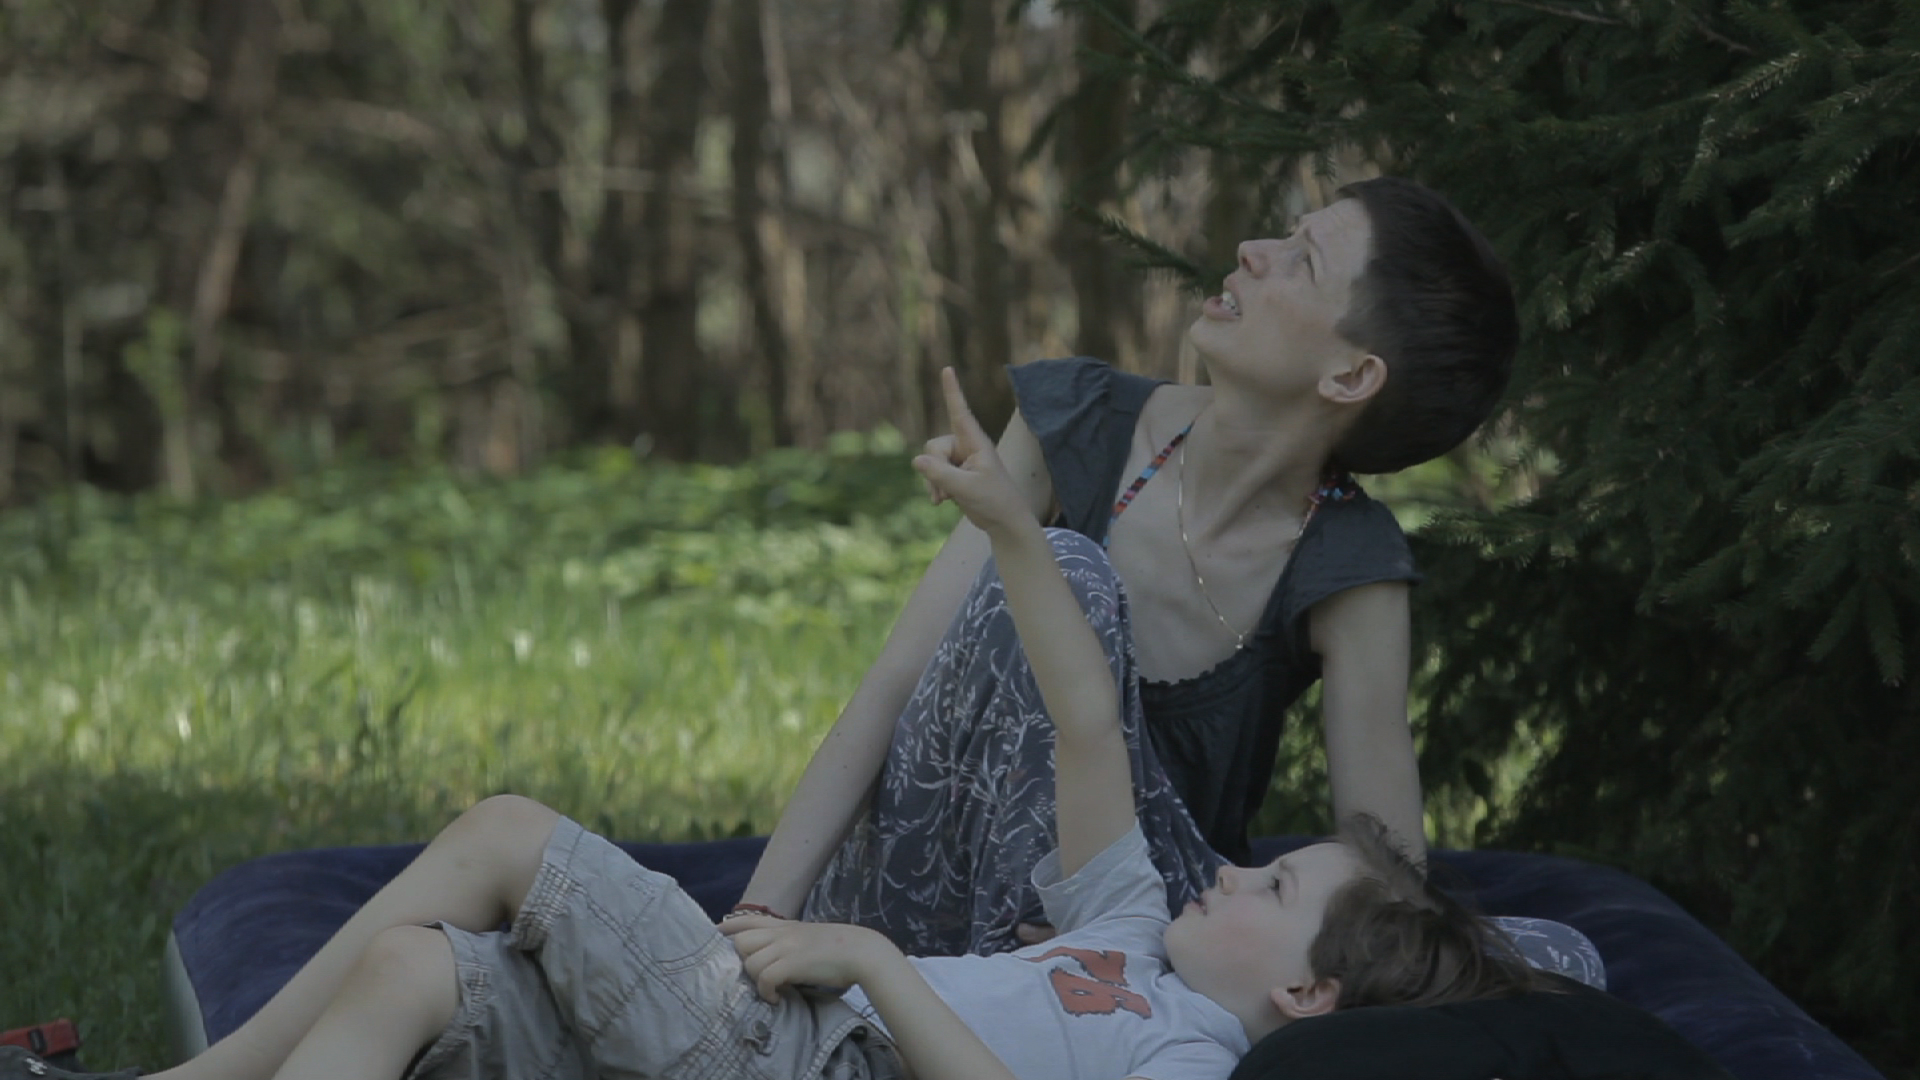 Kadr z filmu "Joanna" Anety Kopacz, fot. Wajda Studio.